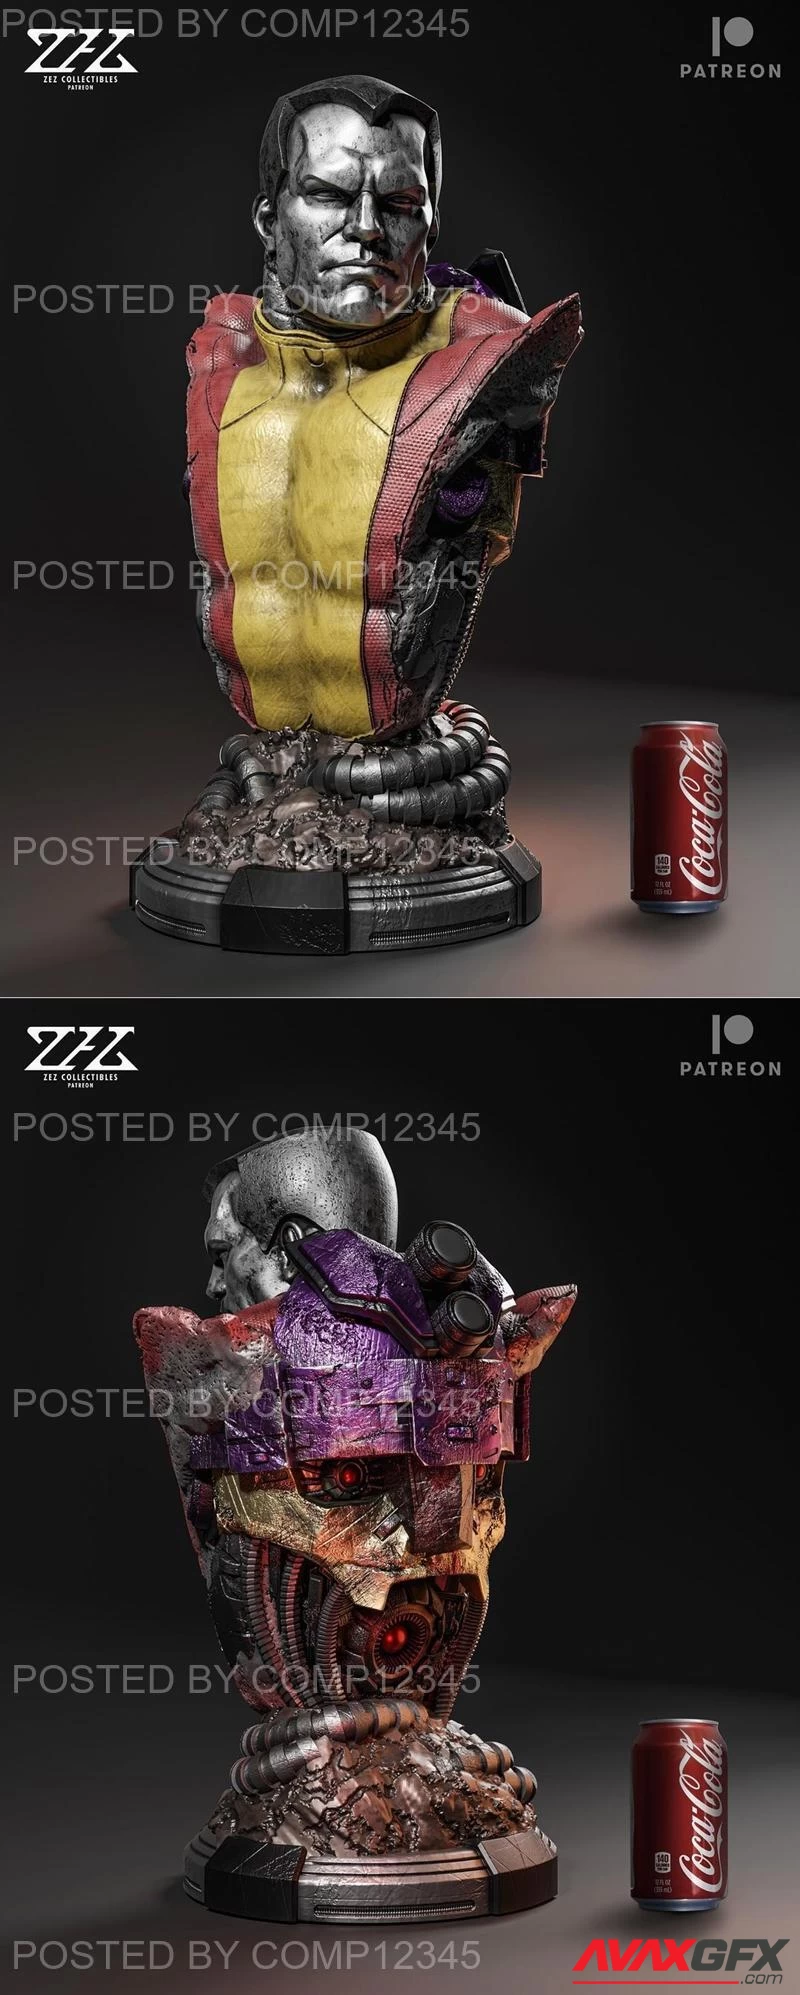 ZEZ Studios - Colossus Bust